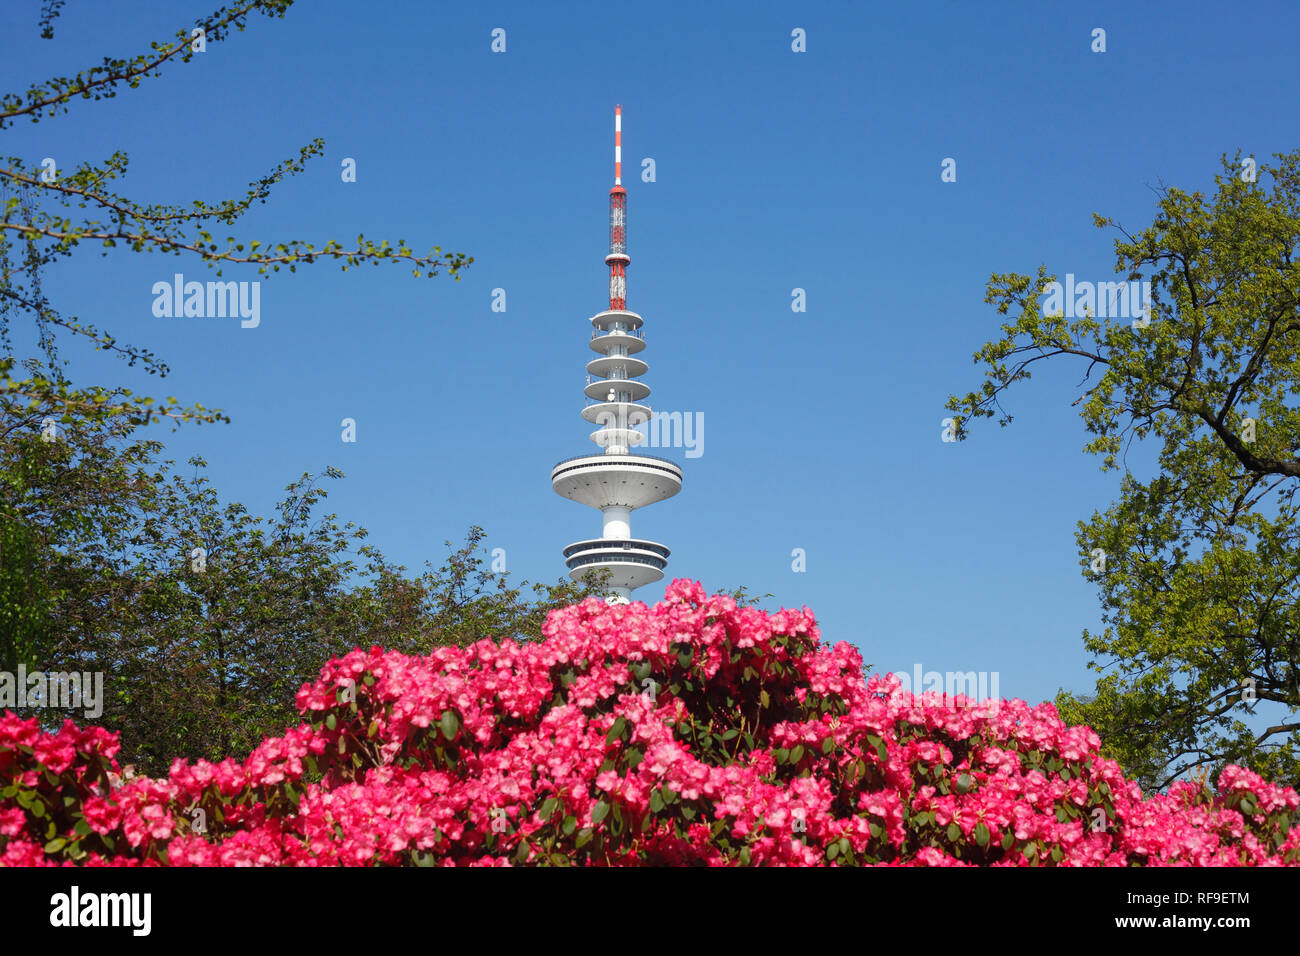 Japanese garden with TV tower and rhododendron blossom, Hamburg, Germany, Europe I Japanischer Garten mit Fernsehturm und Rhododendronblüte, Hamburg,  Stock Photo